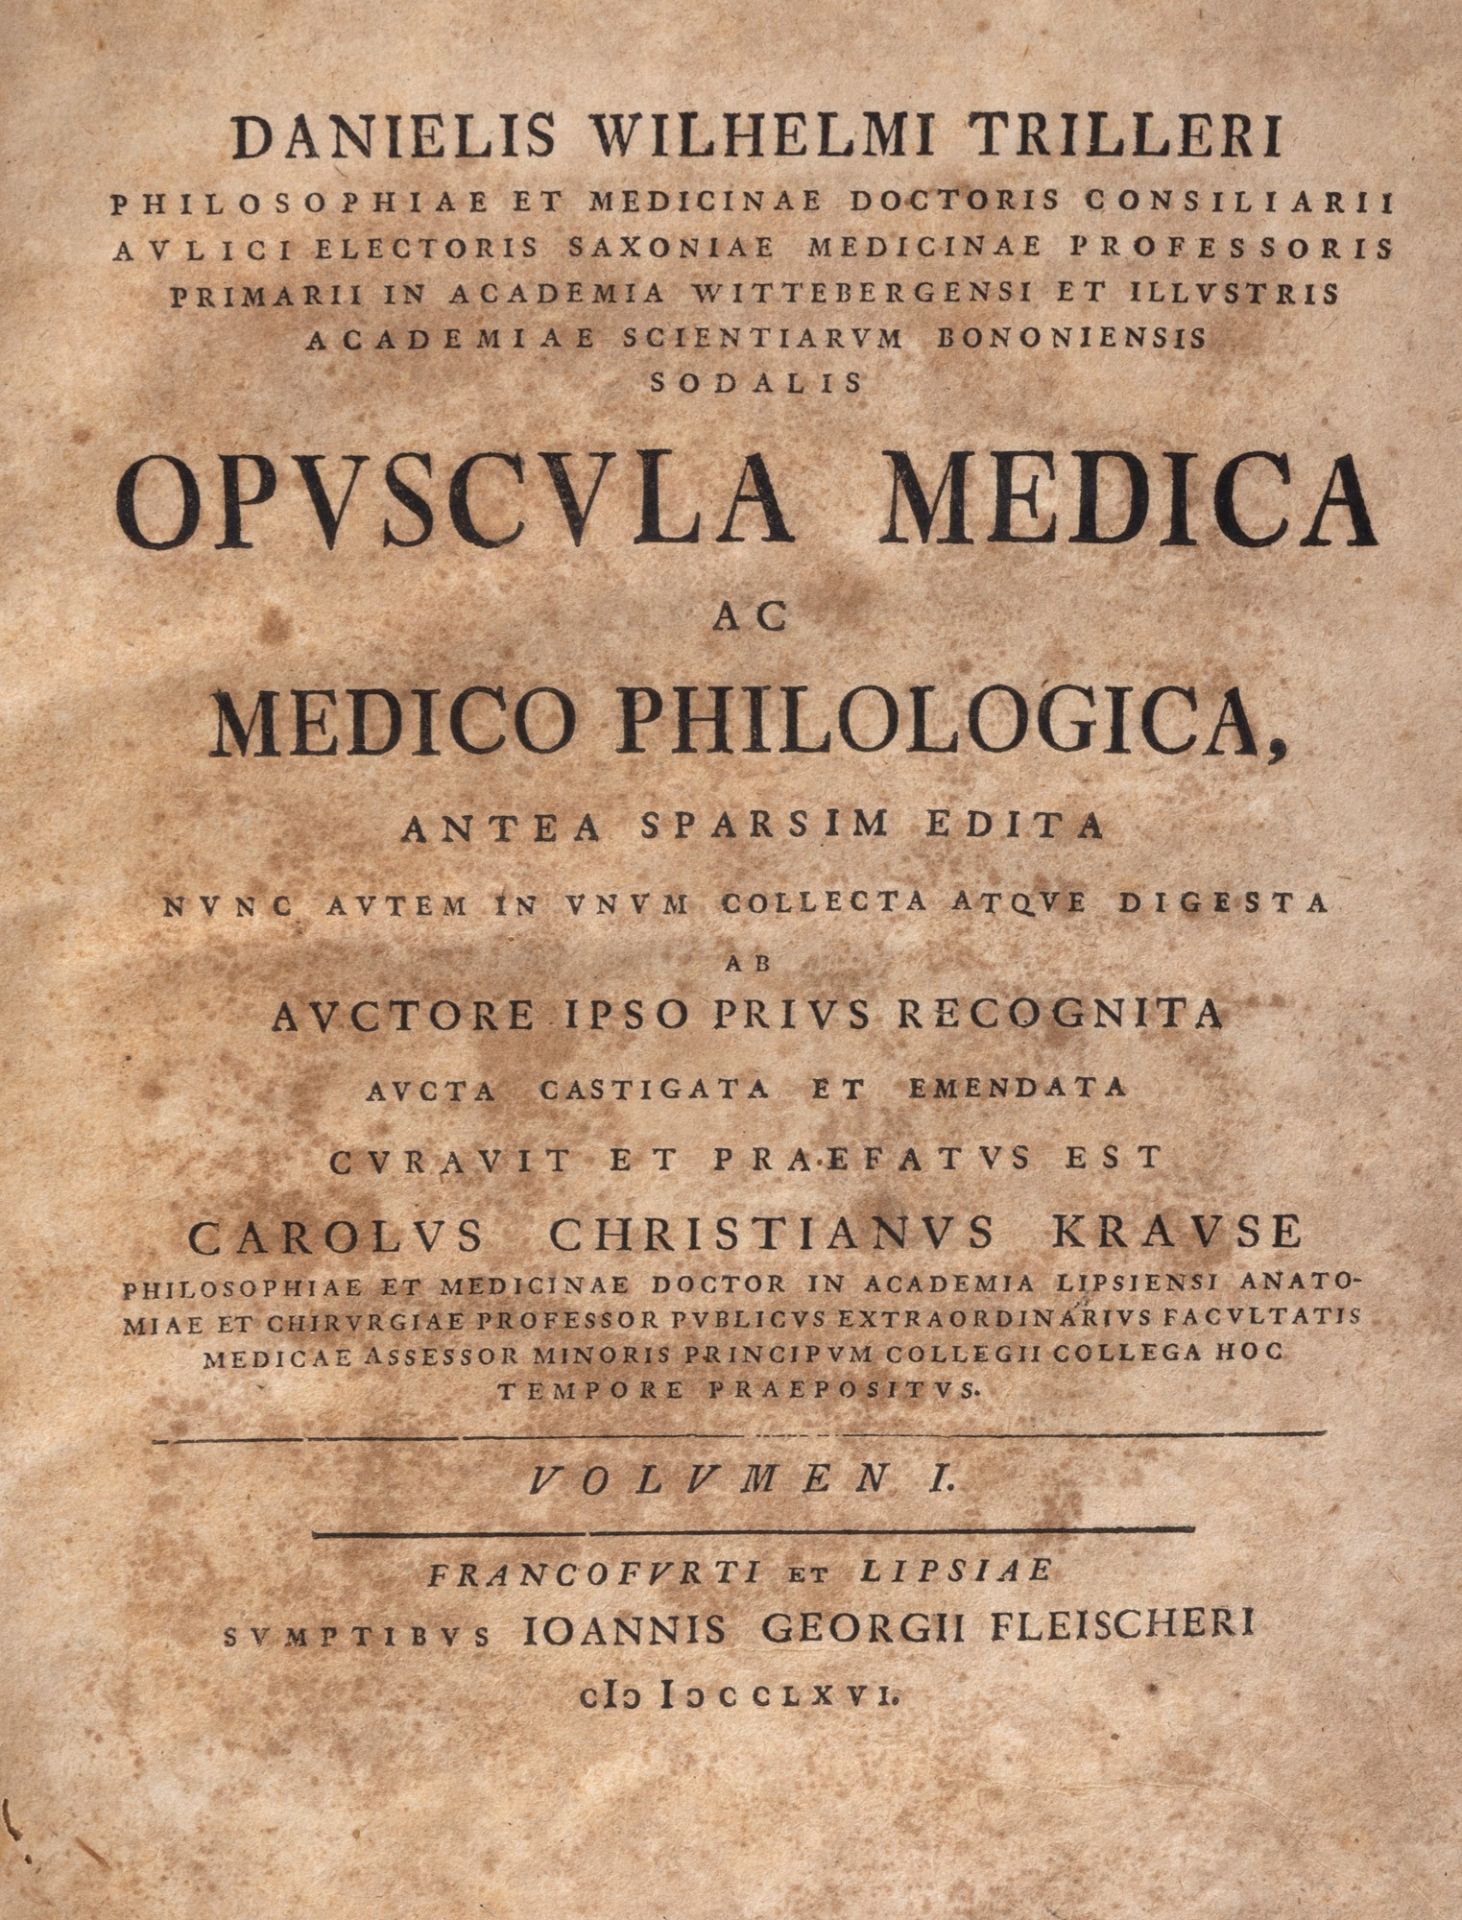 Medicine - Triller, Daniel Wihleim - Medical booklet ac medica philologica. Antea sparsim edita nunc - Image 2 of 2